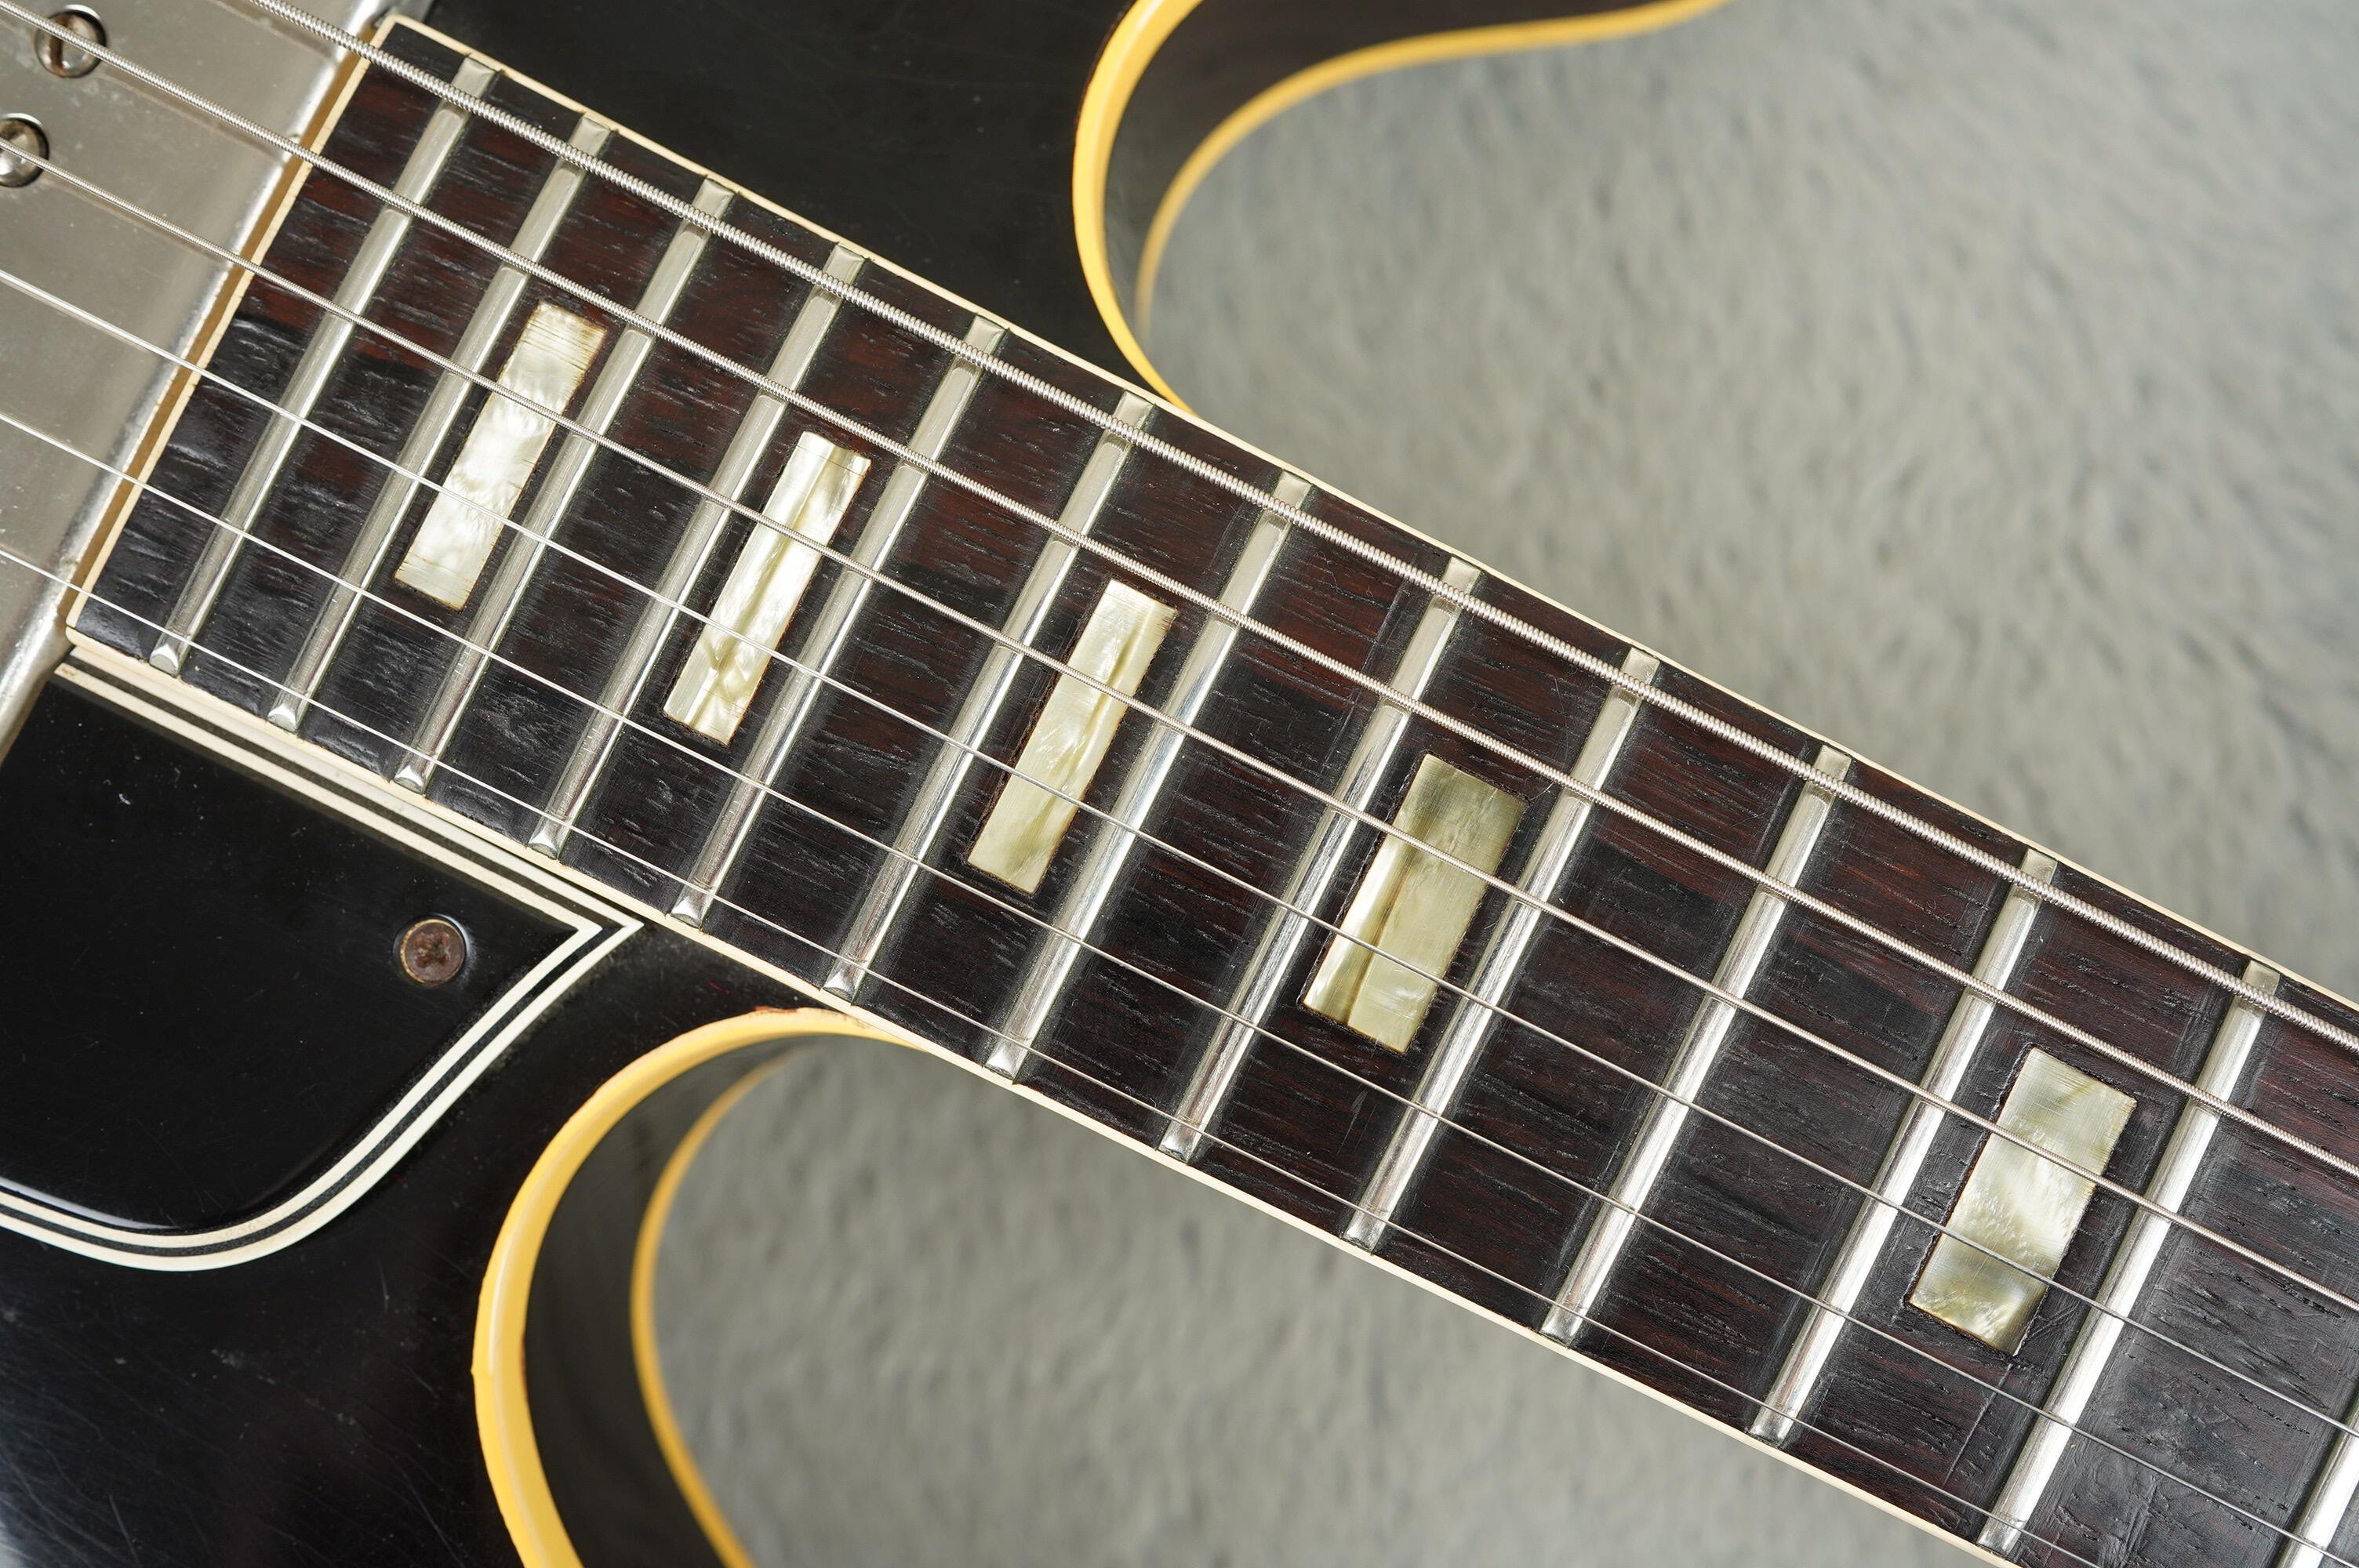 1964 Gibson ES-330 TD